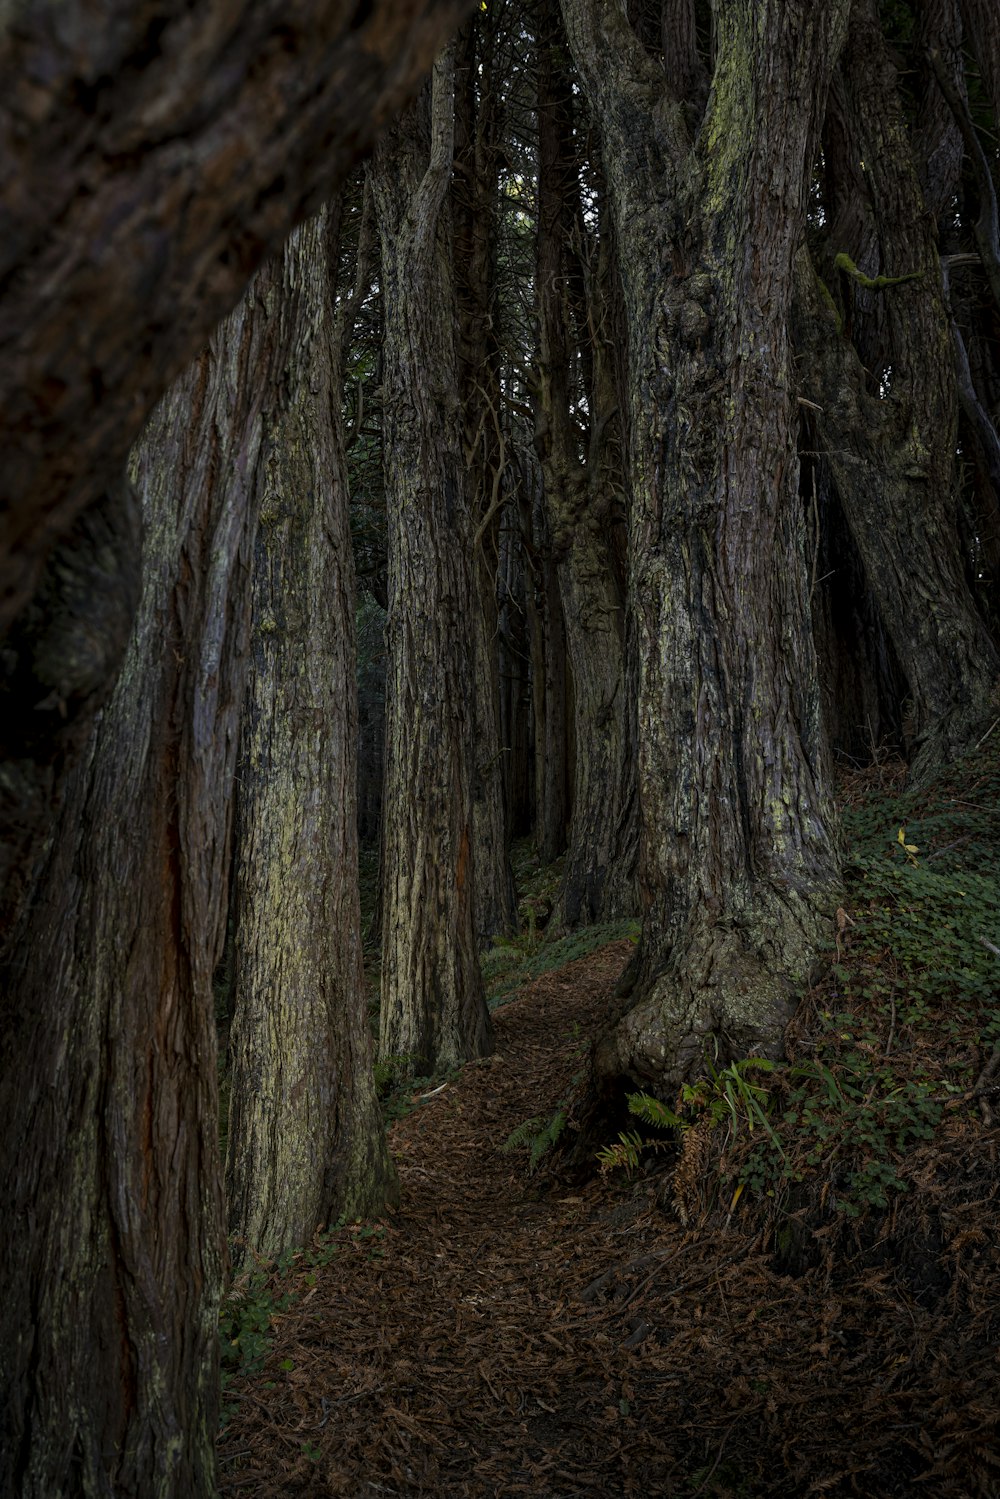 a path through a forest